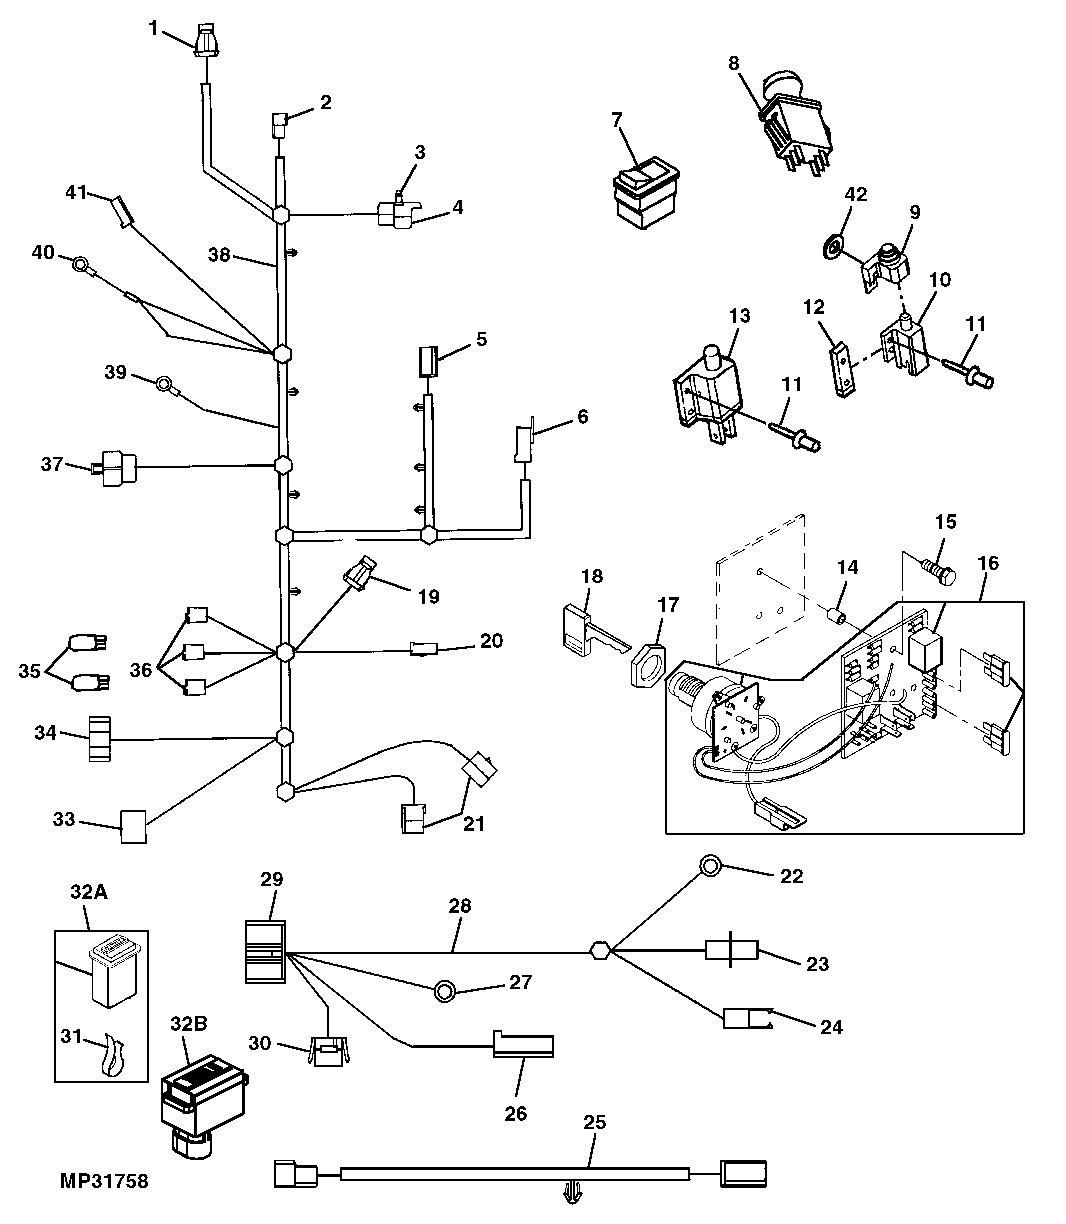 John Deere 212 Wiring Schematic